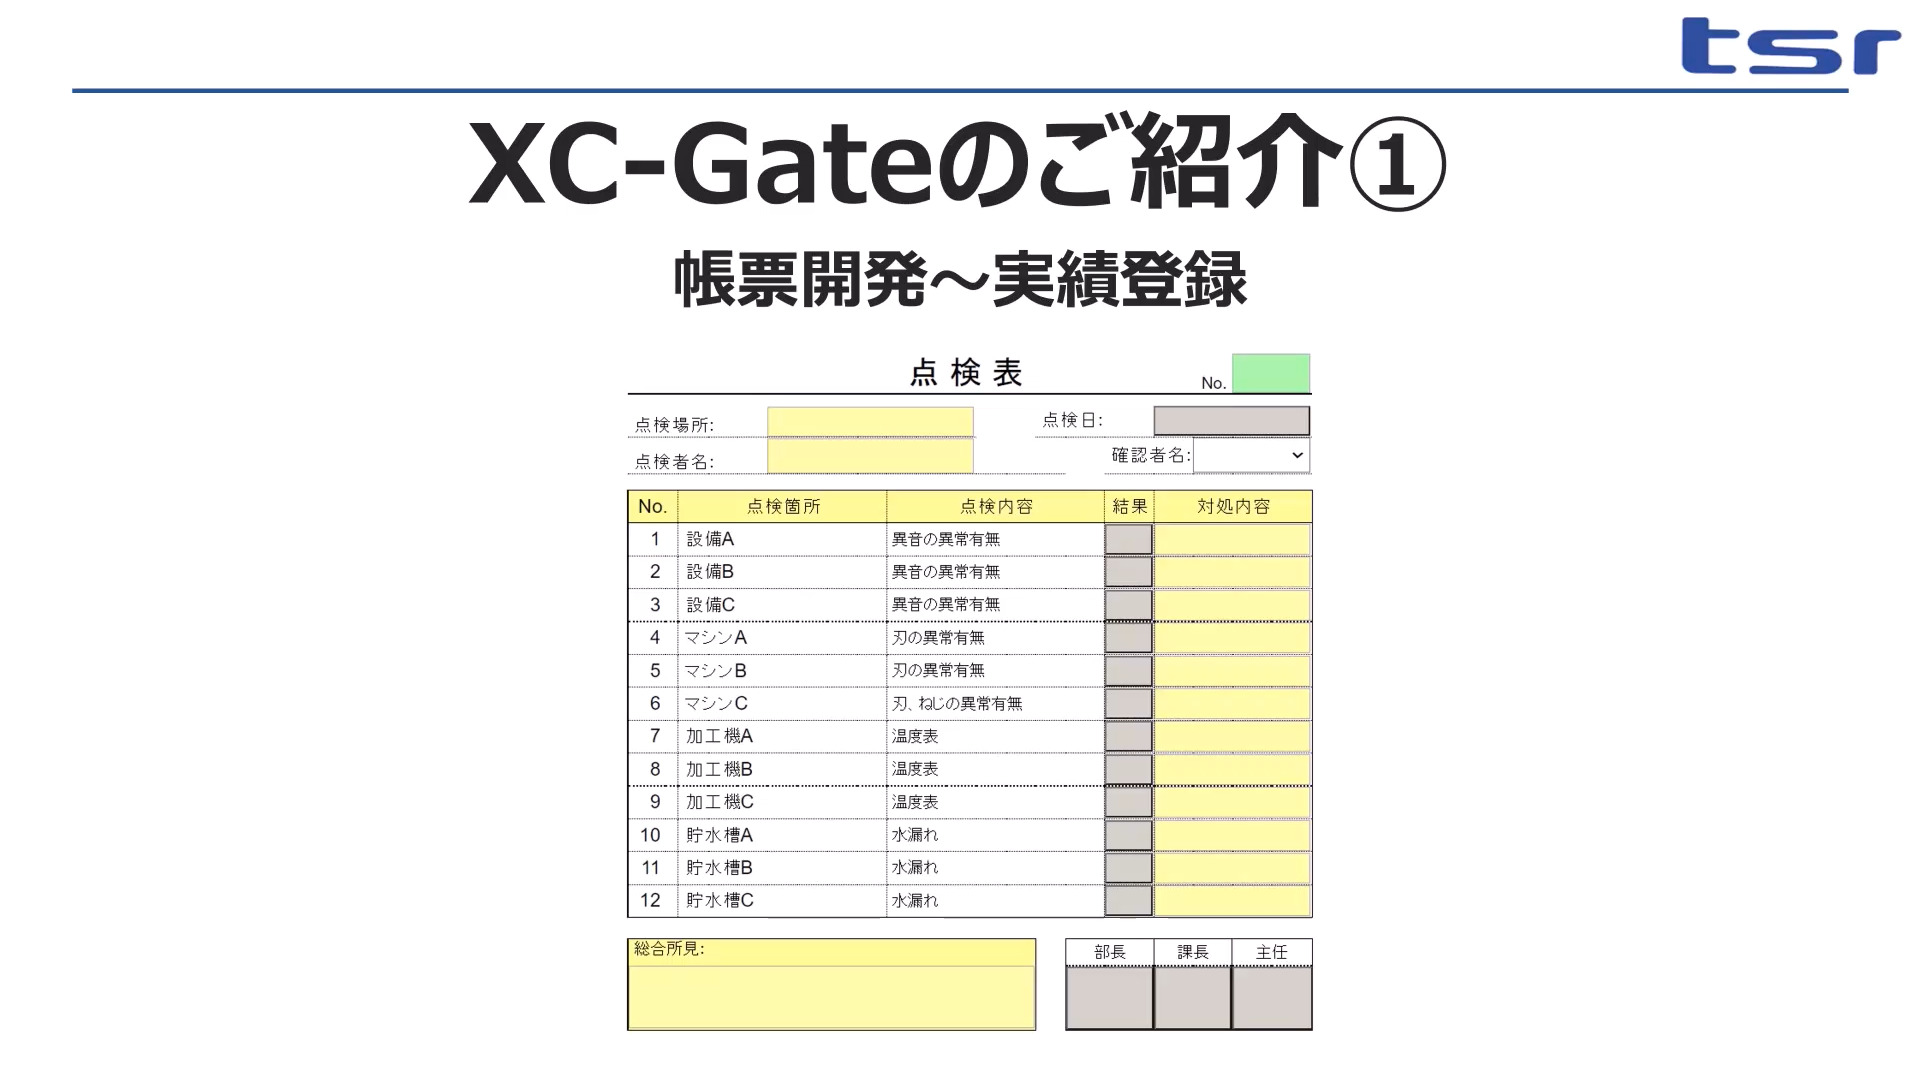 XC-Gateご紹介動画をご覧ください。
・点検表で帳票開発～実績登録